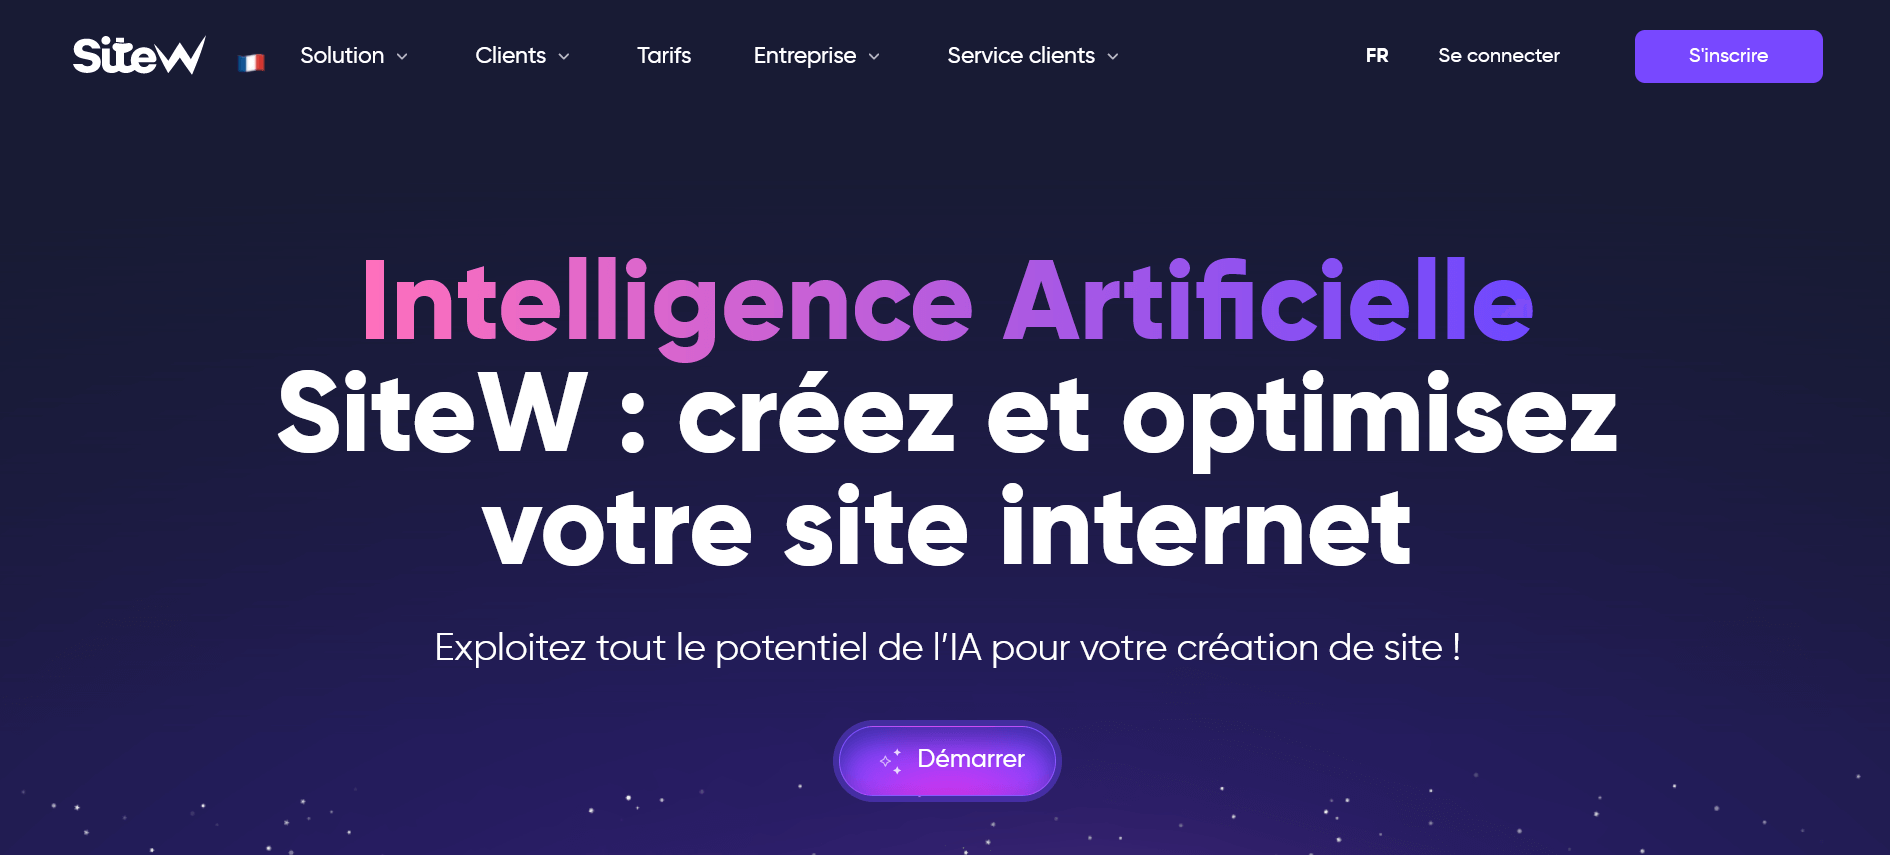 Page d'accueil sur l'IA dans SiteW